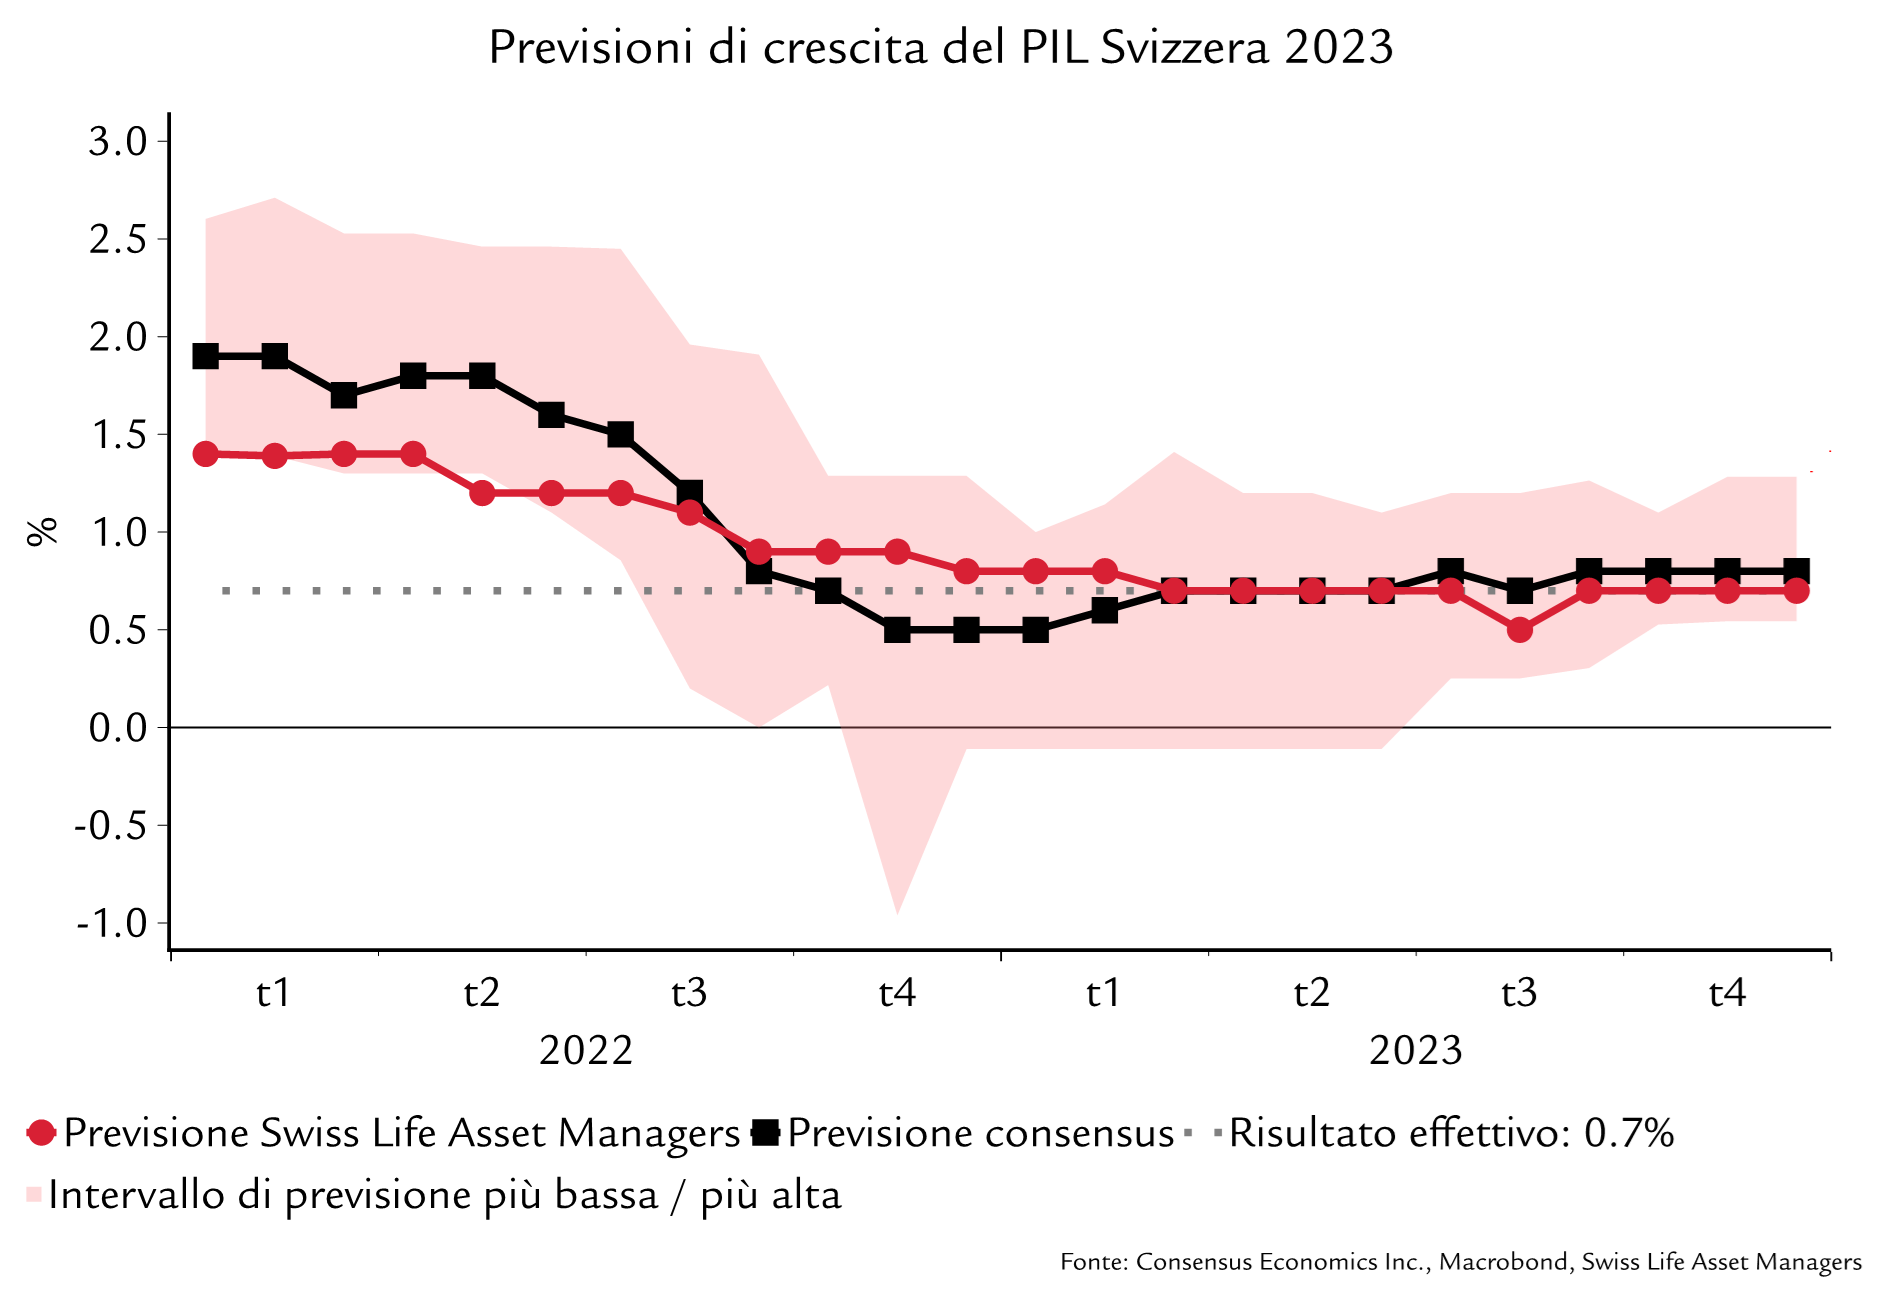 Previsioni sulla crescita del PIL in Svizzera nel 2023 e risultato effettivo